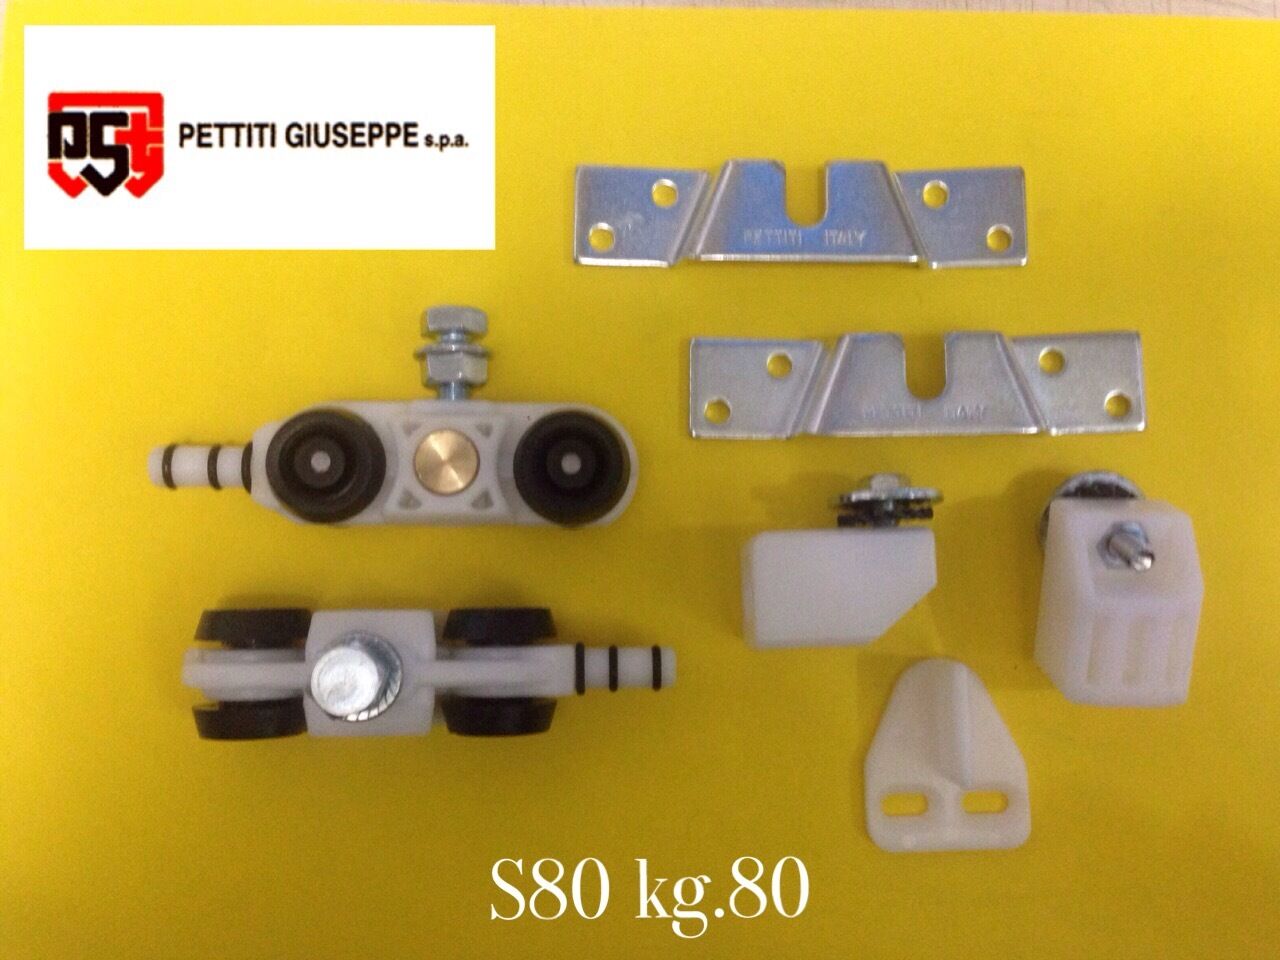 Scorrevoli Pettiti kit portata KG.80 S80 con Binario cm.190 pattini Monosilent alluminio